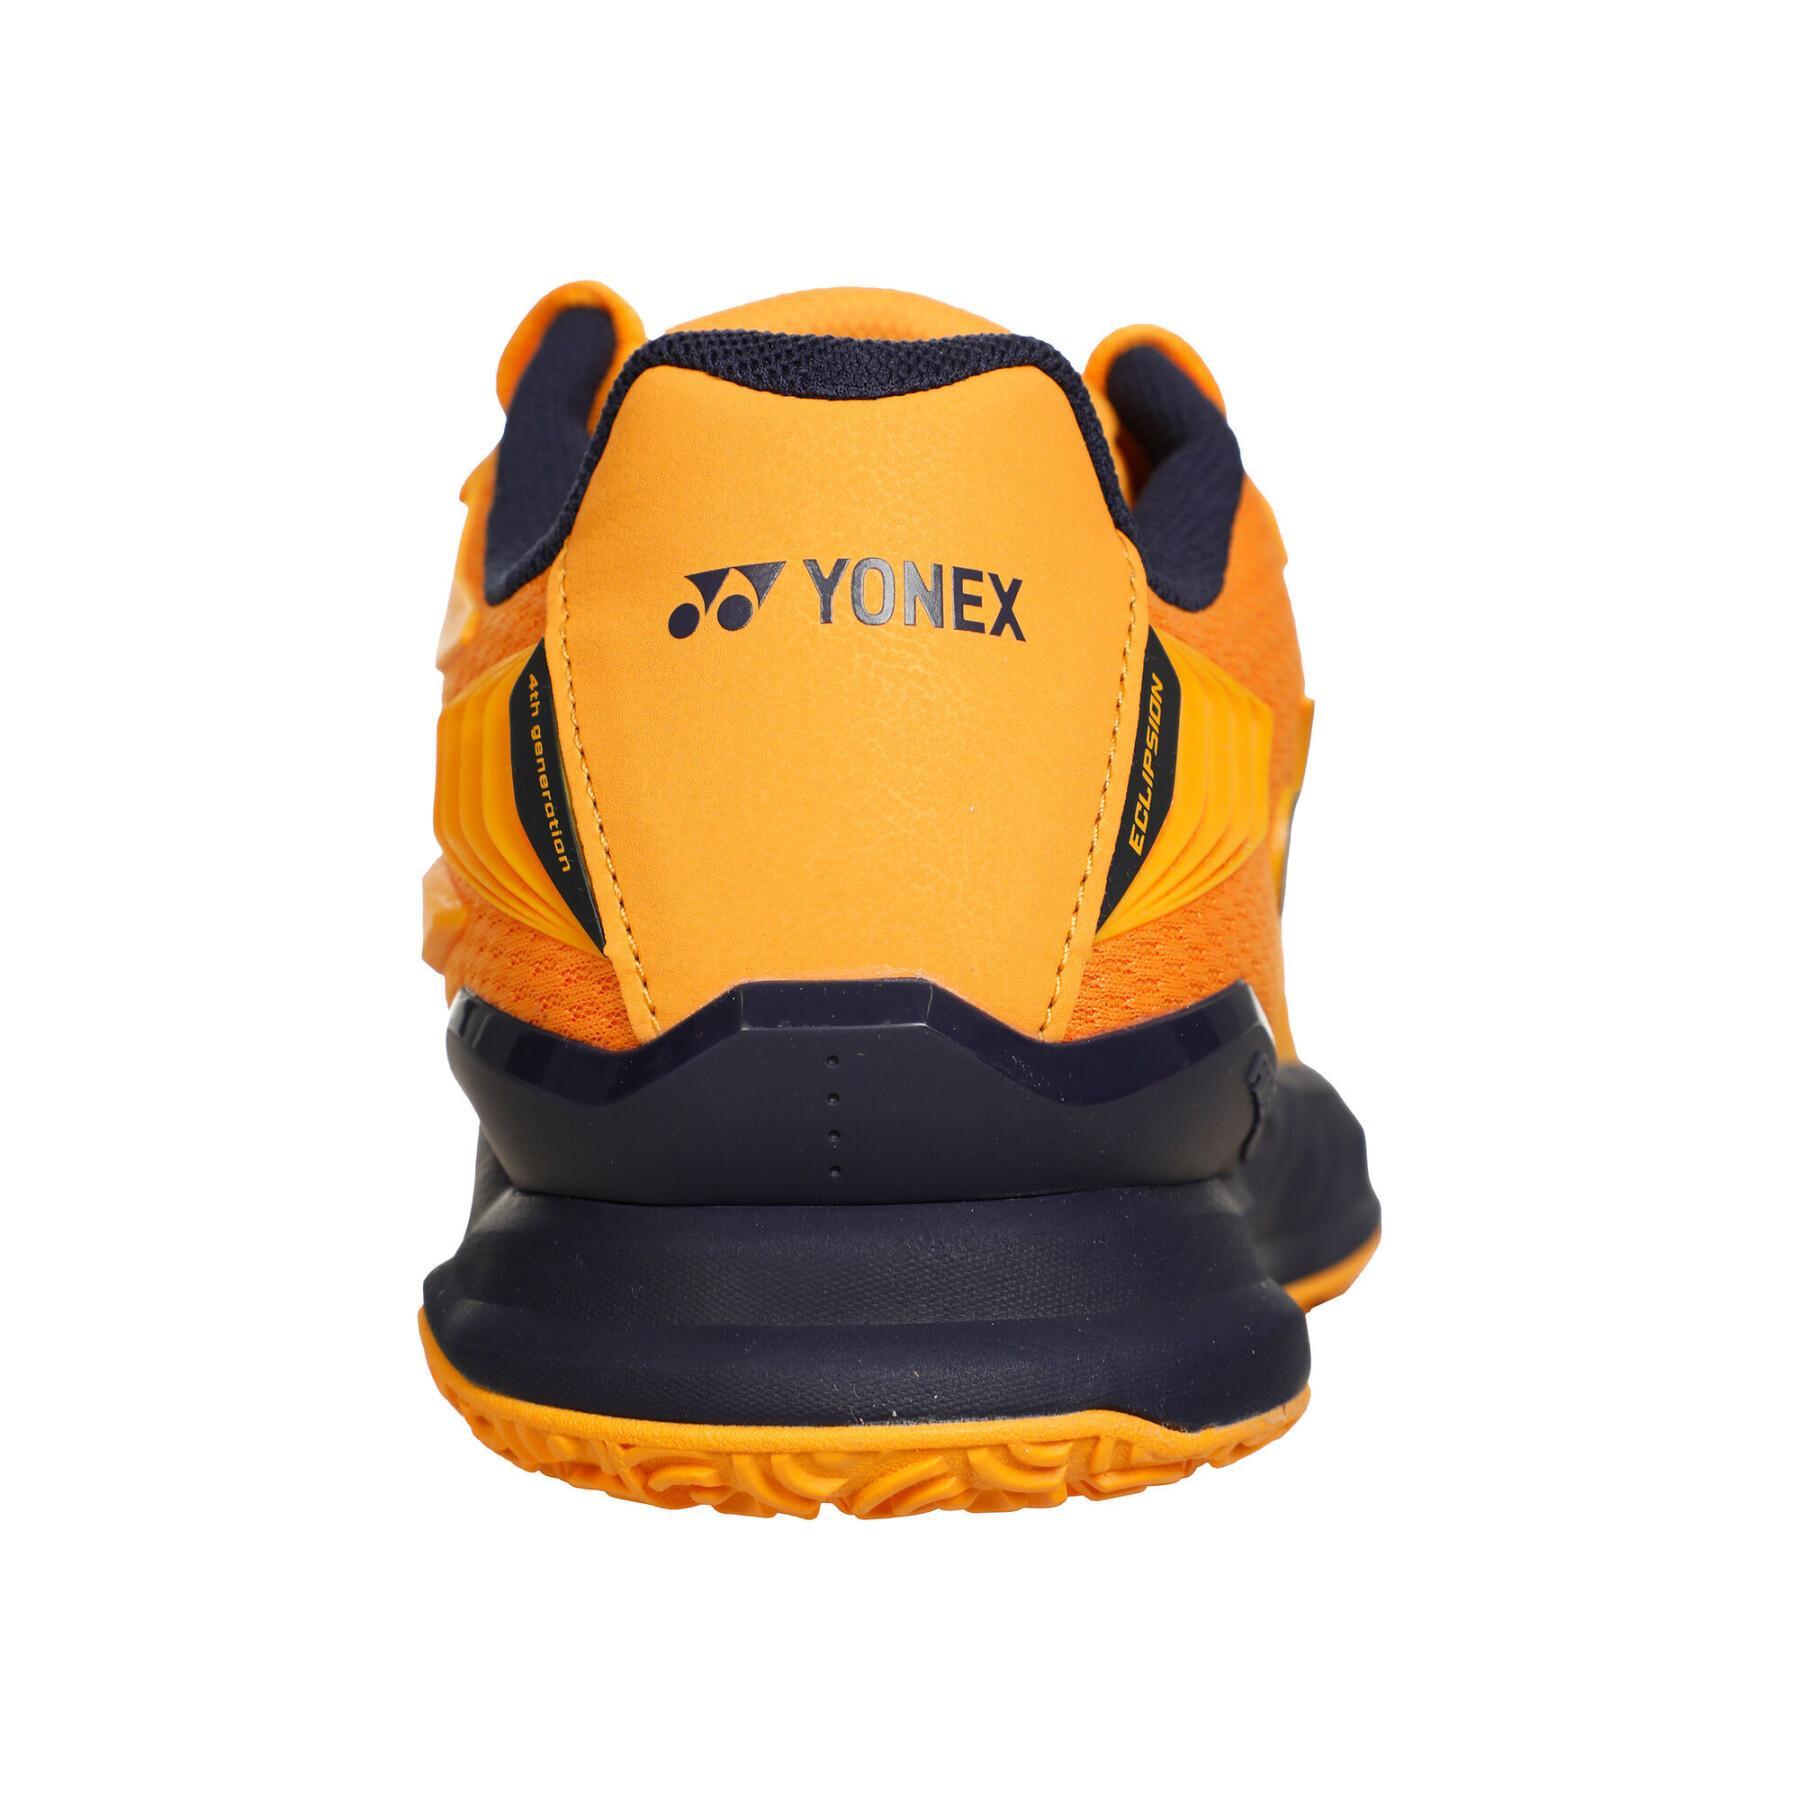 Zapatillas de tenis Yonex PC Eclipsion 4